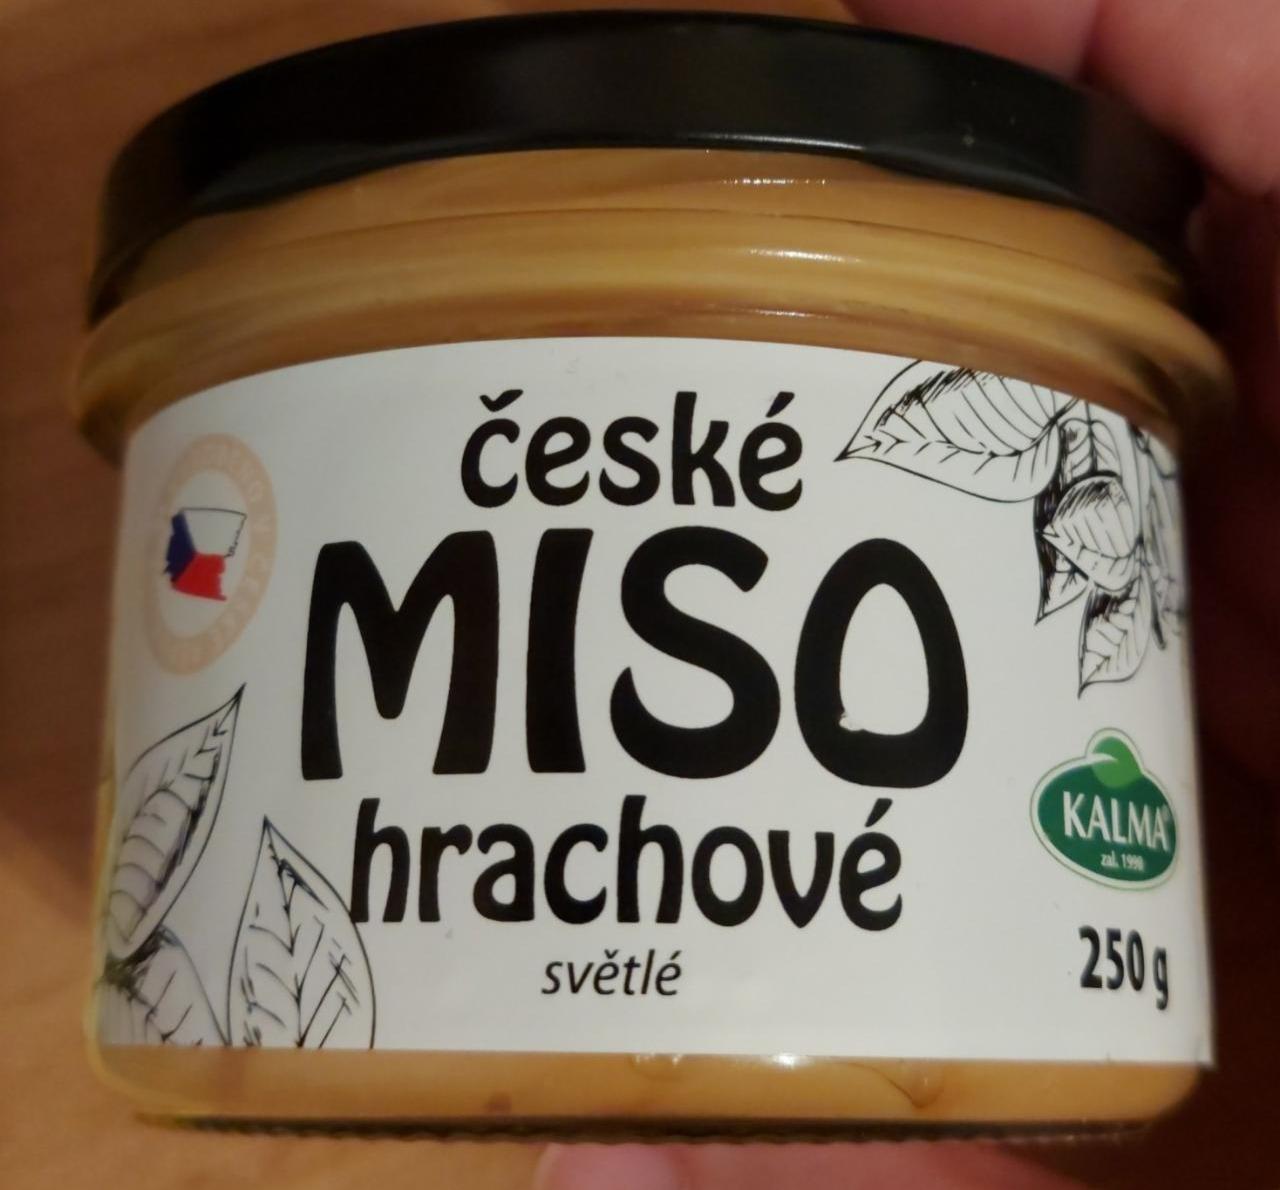 Fotografie - České miso hrachové světlé Kalma